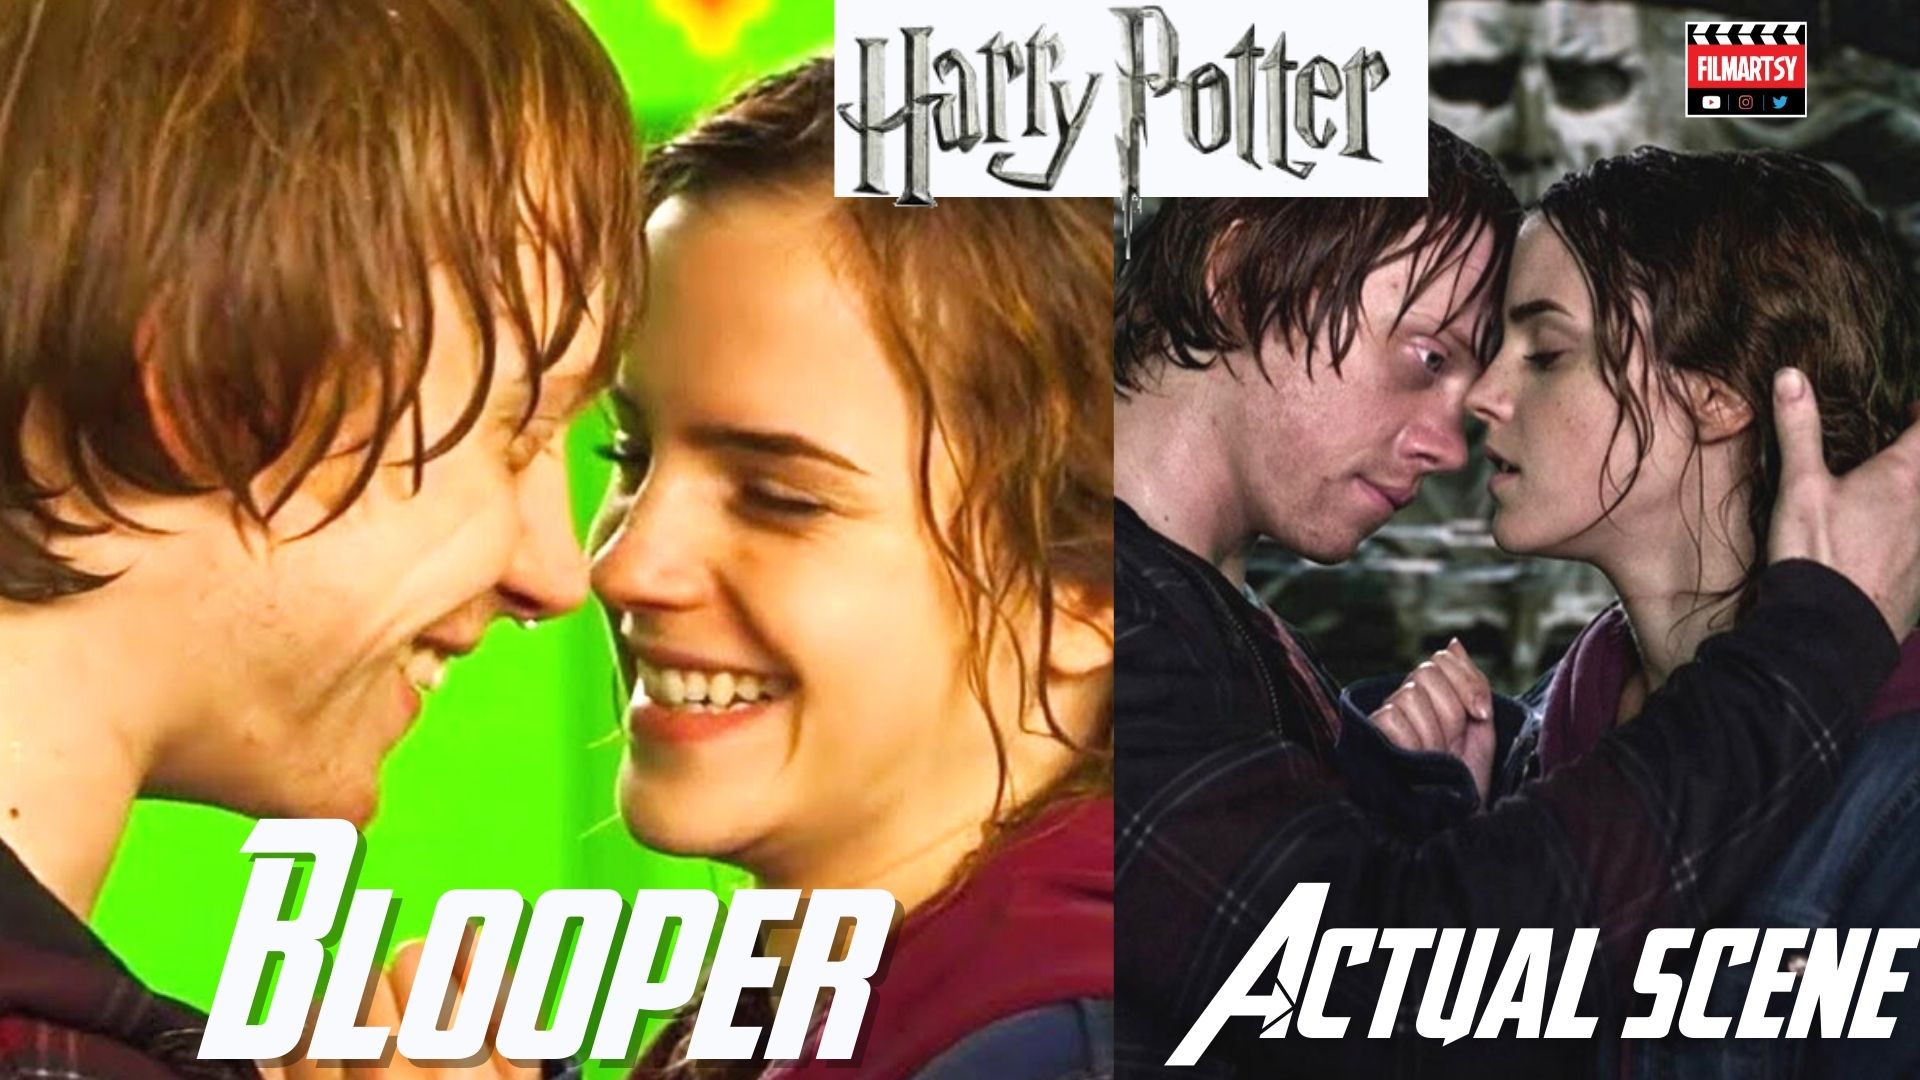 Harry Potter Bloopers Vs. Actual Scene